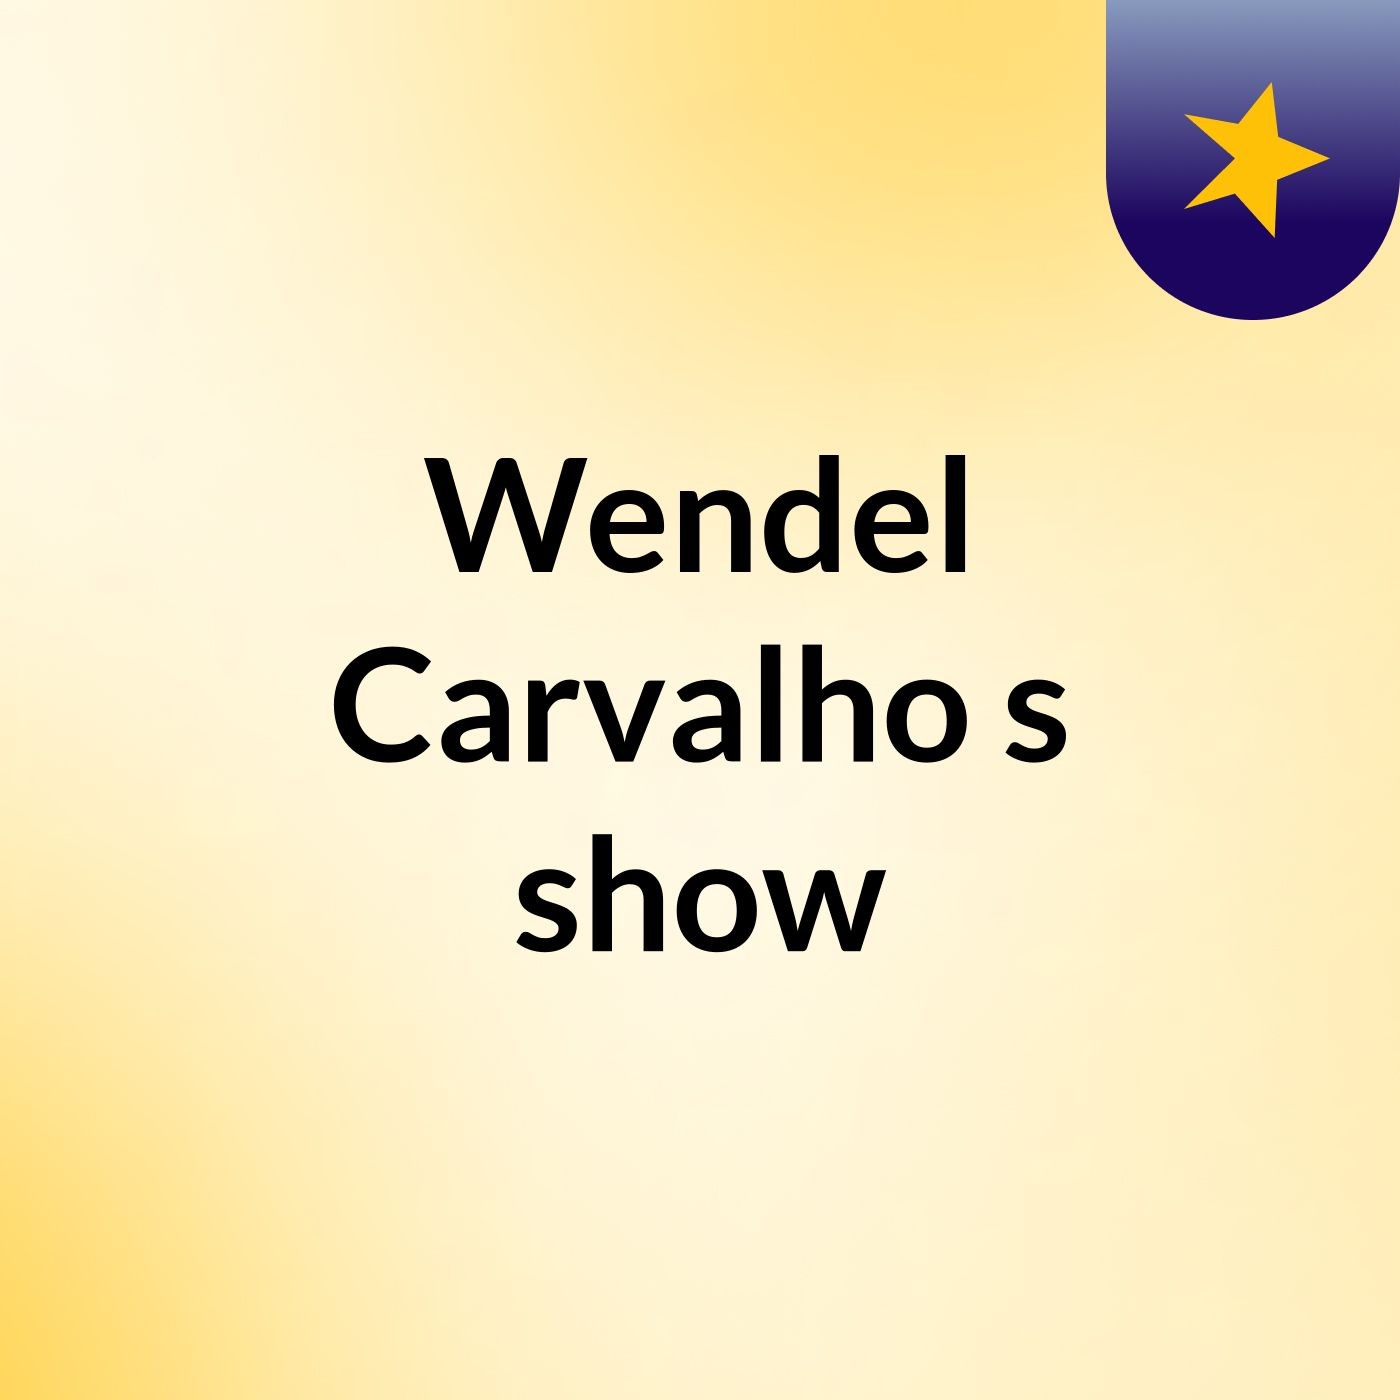 Wendel Carvalho's show